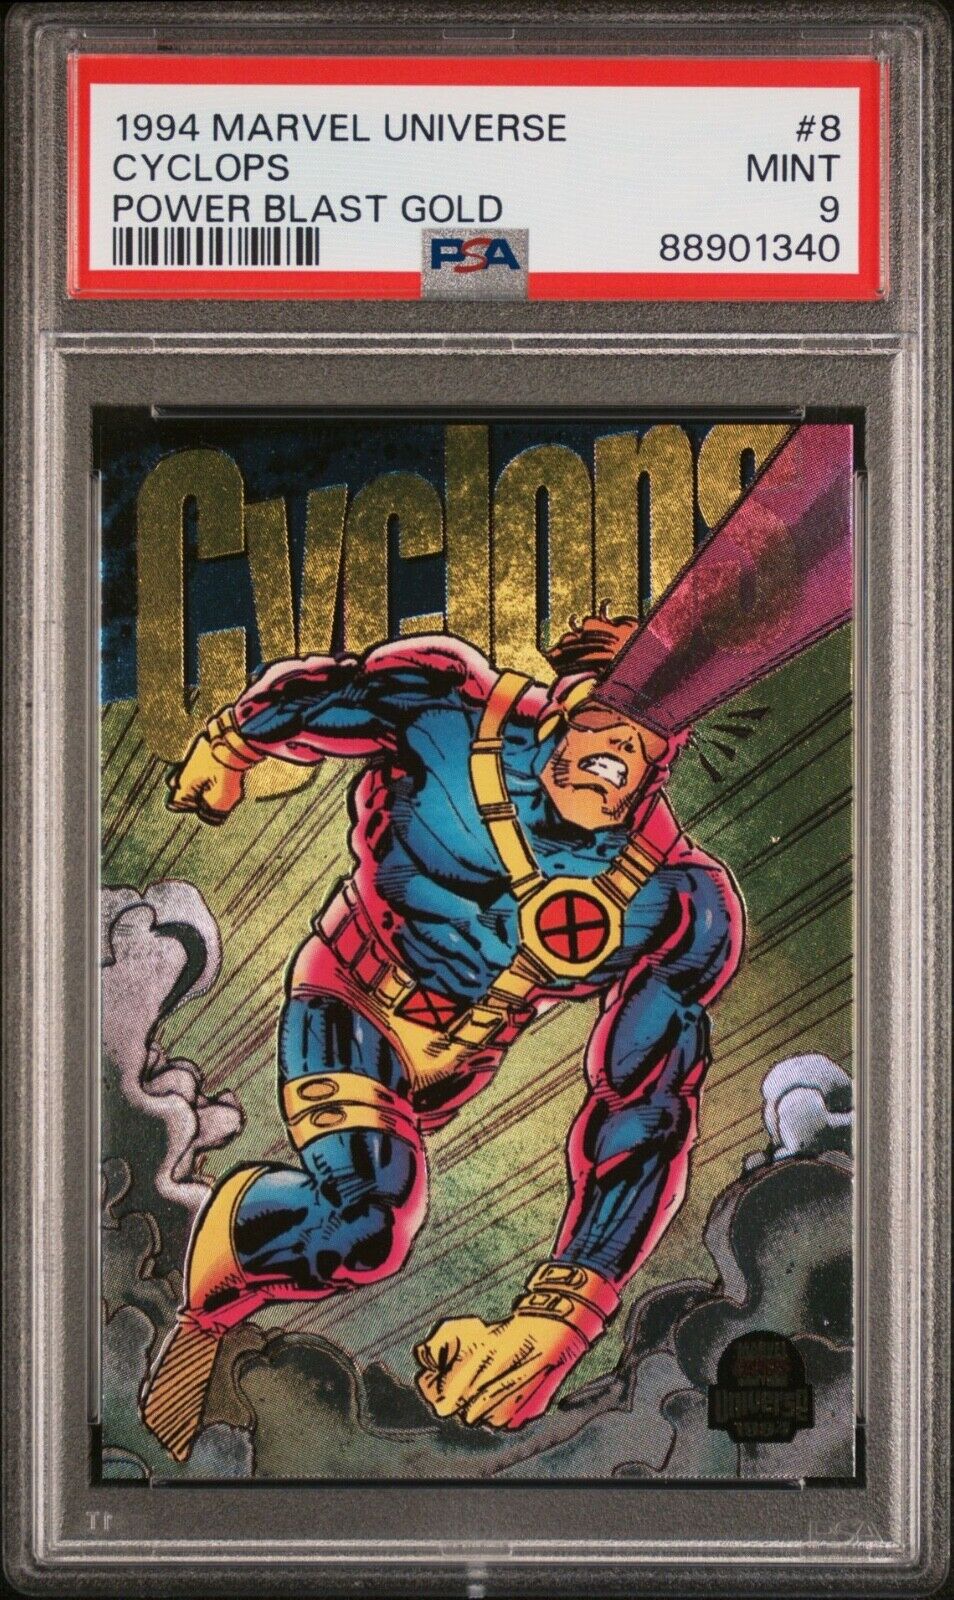 1994 Fleer Marvel Universe Power Blast Gold Cyclops PSA 9